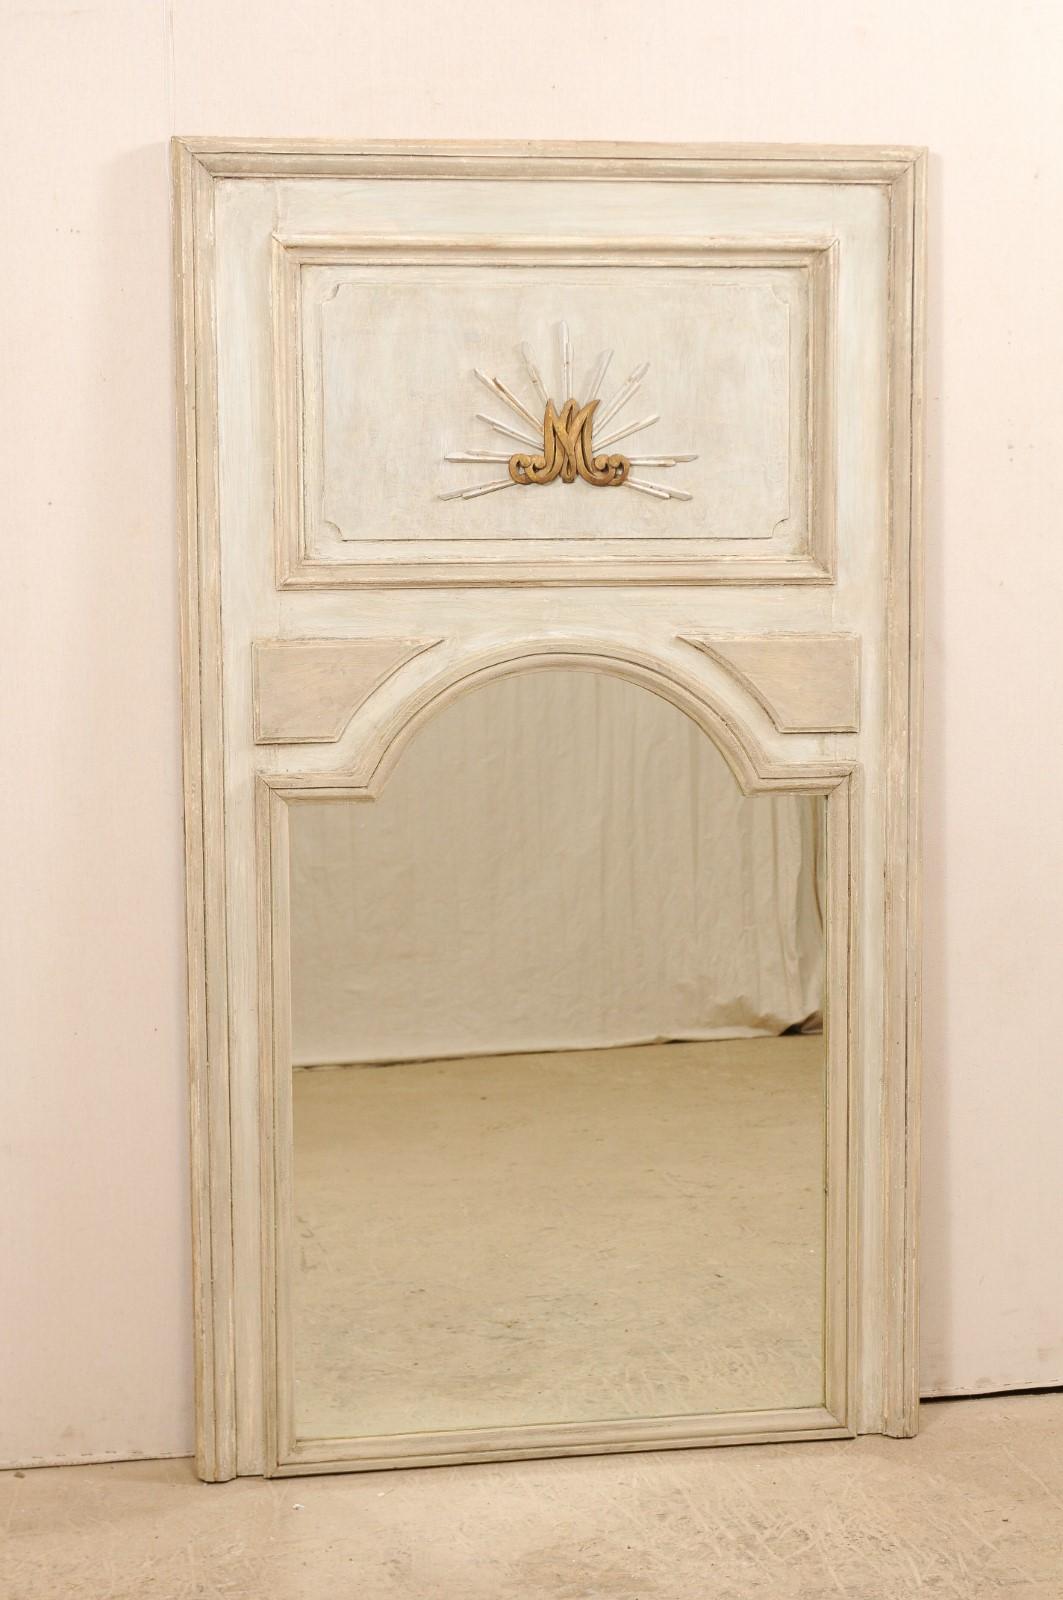 Un grand miroir trumeau en bois peint français du 19ème siècle. Ce miroir ancien de France présente une forme rectangulaire haute, avec un trumeau typique composé d'une plaque de bois, au-dessus d'un miroir en verre, avec un sommet en forme d'arc.